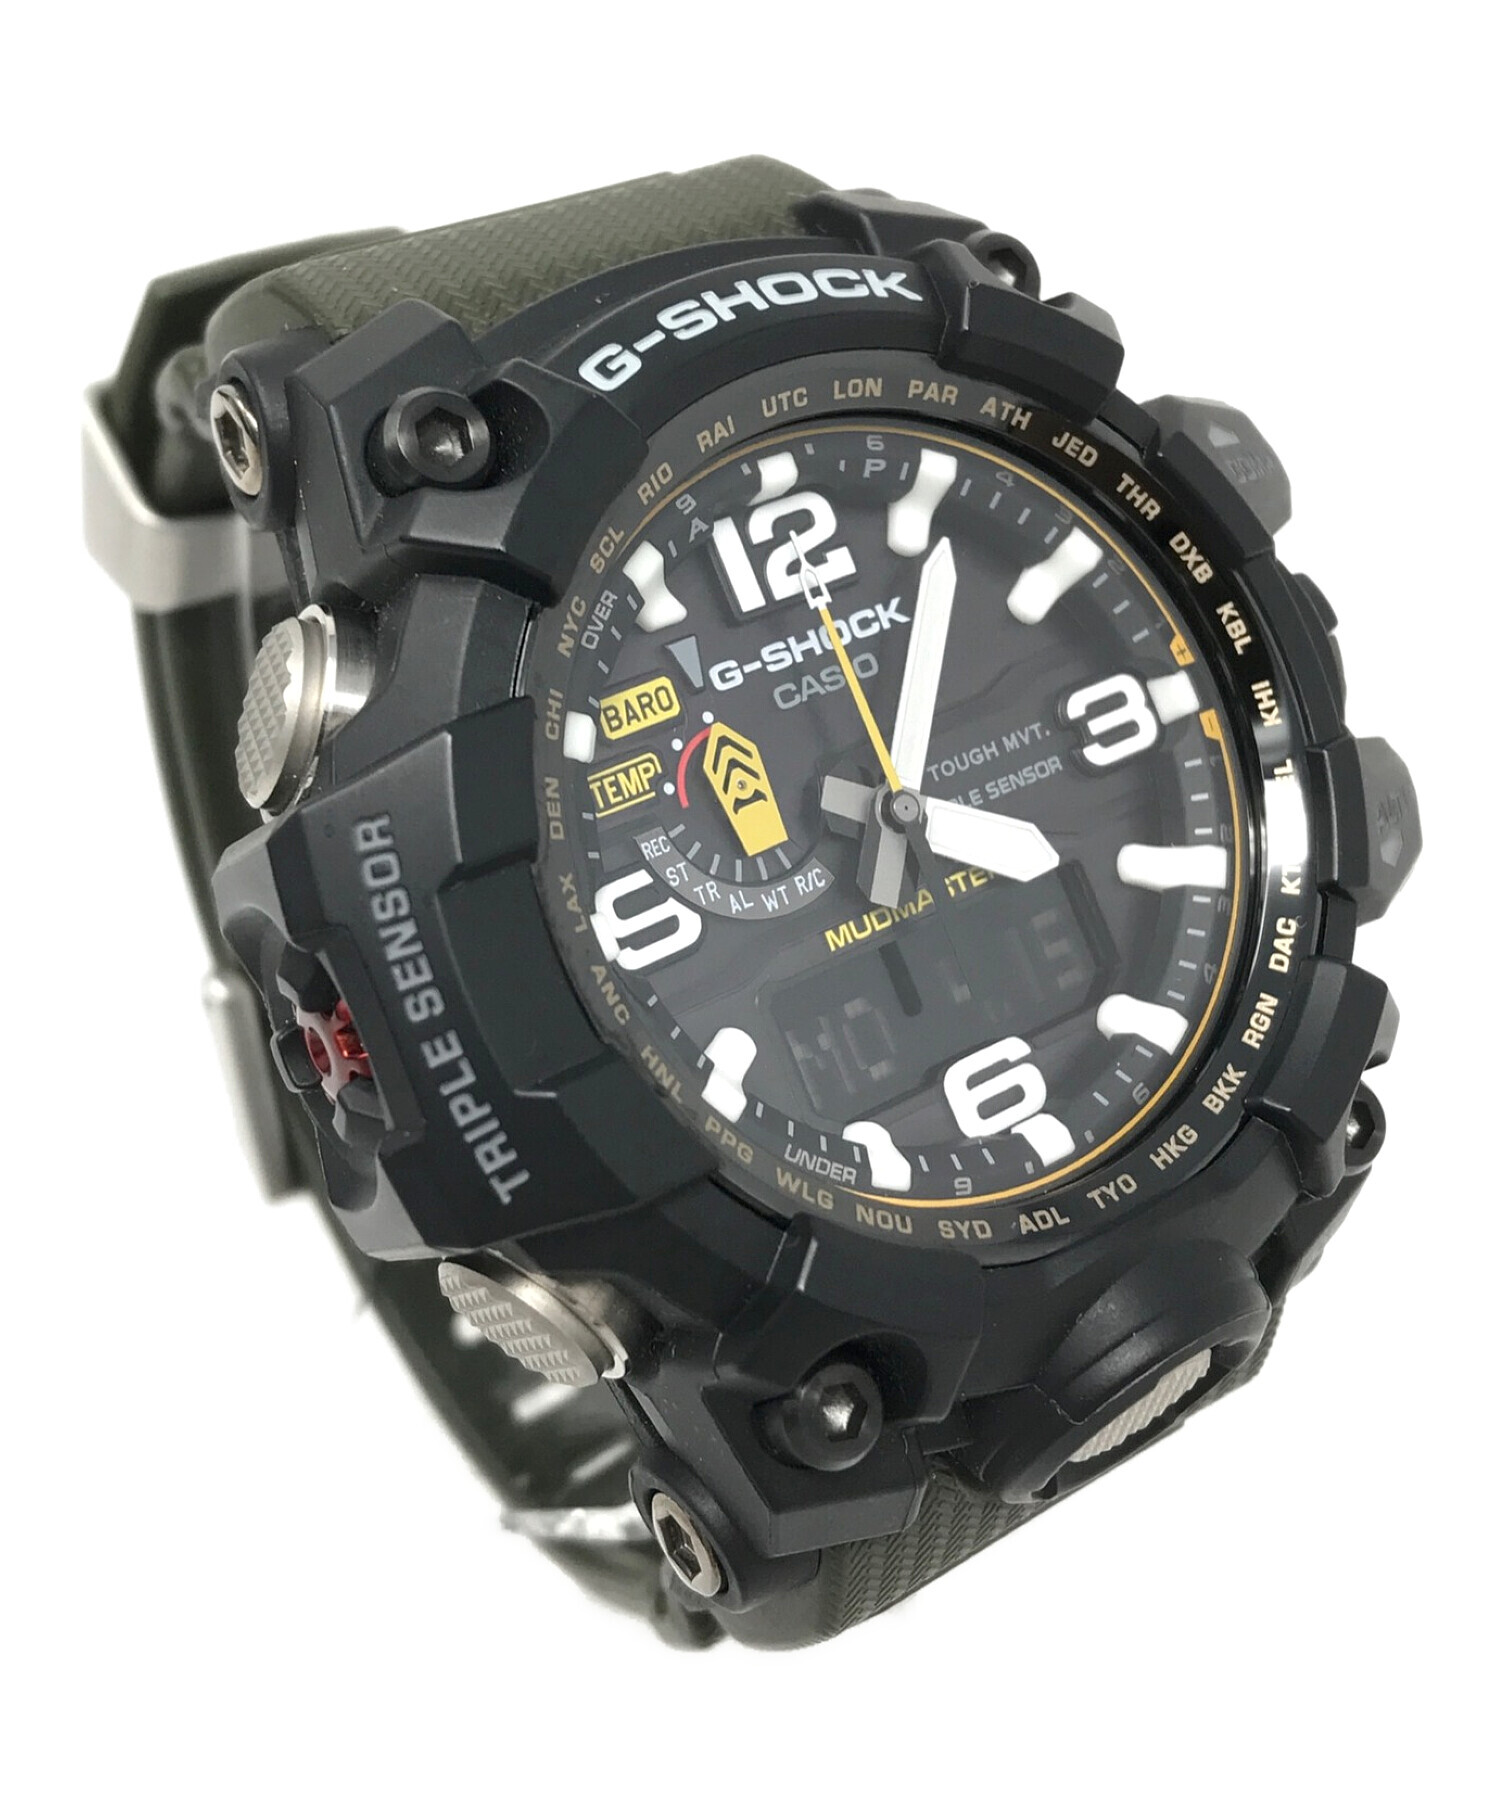 【新入荷品】カシオ CASIO Gショック G-SHOCK デジアナ メンズ 腕時計 GBA-400-1A9 ブラック/ゴールド ブラック コラボレーションモデル